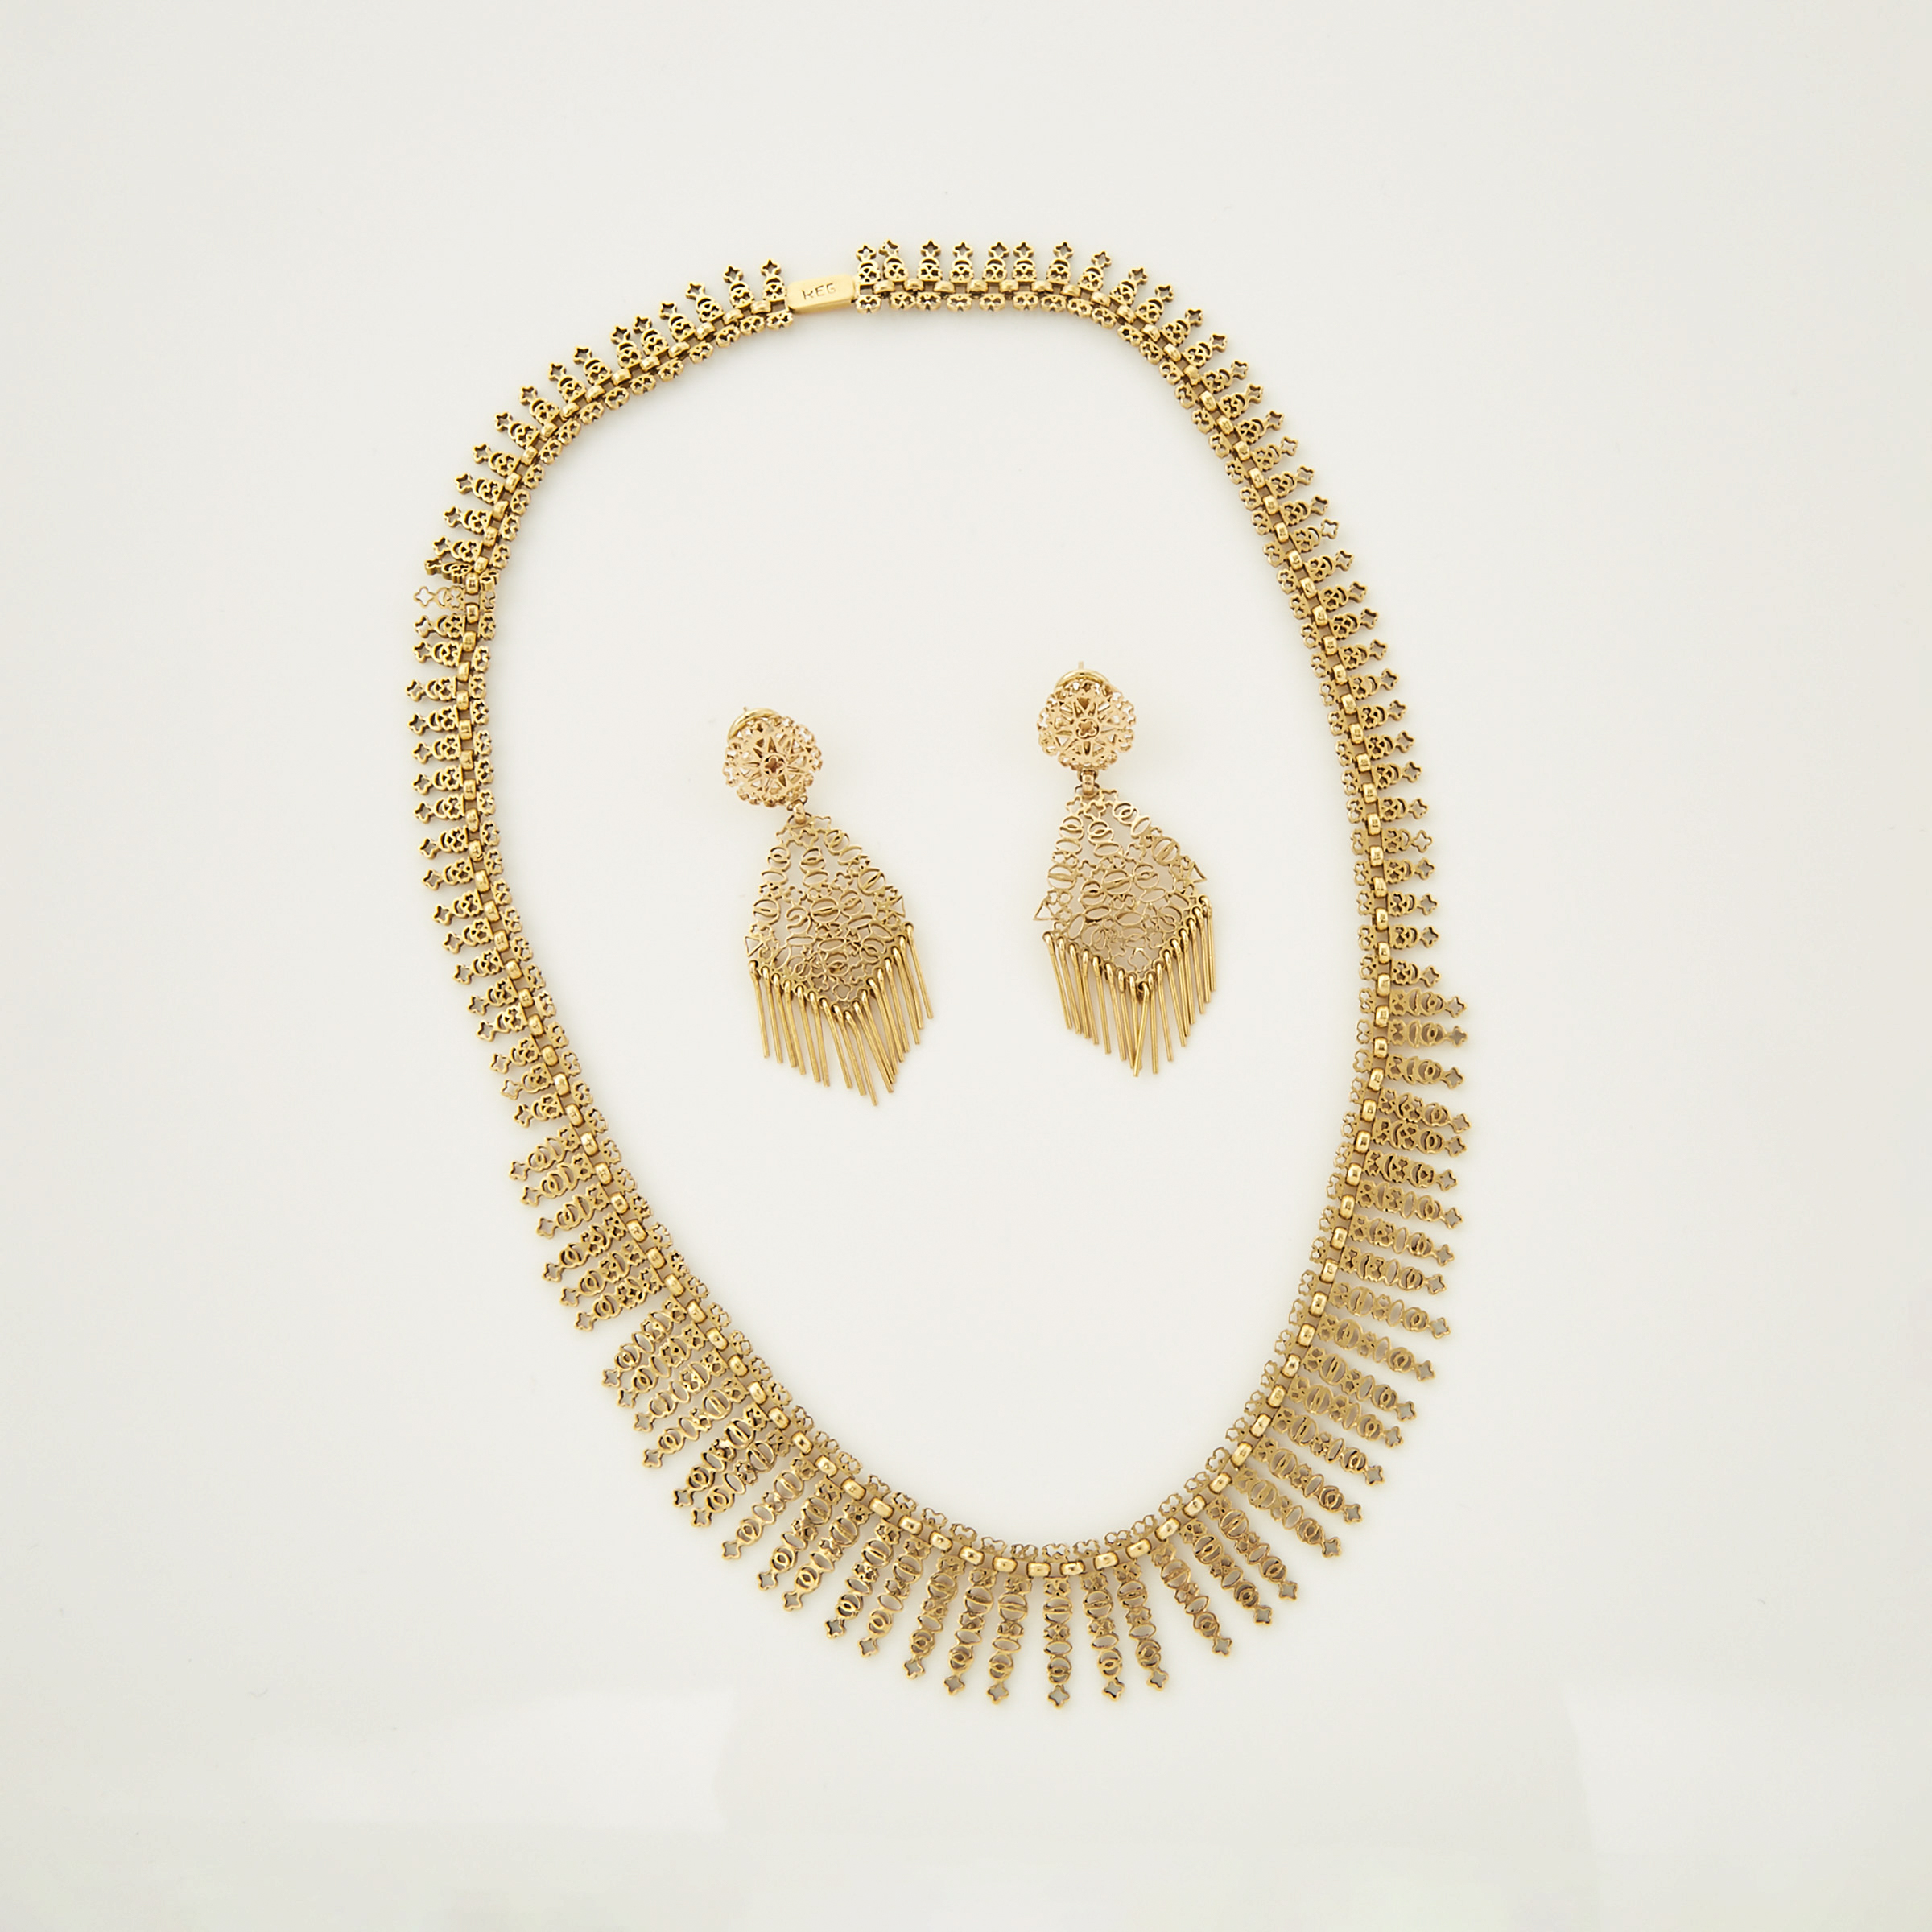 Portuguese 800 Grade Gold Filigree Fringe Necklace